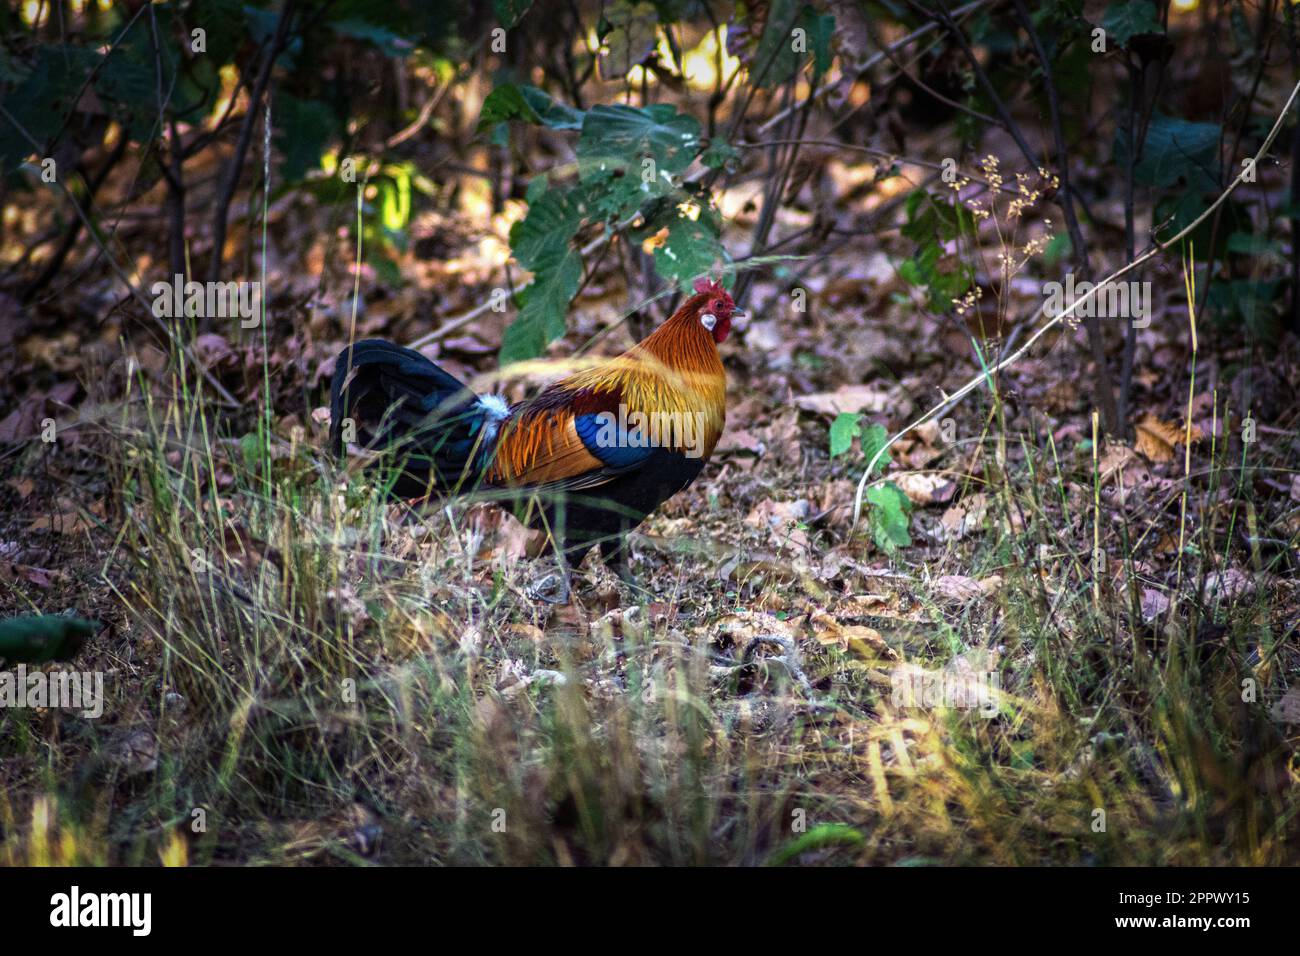 Jungle Fowl, Bandhavgarh National Park, Madhya Pradesh, India, Indian wildlife Stock Photo